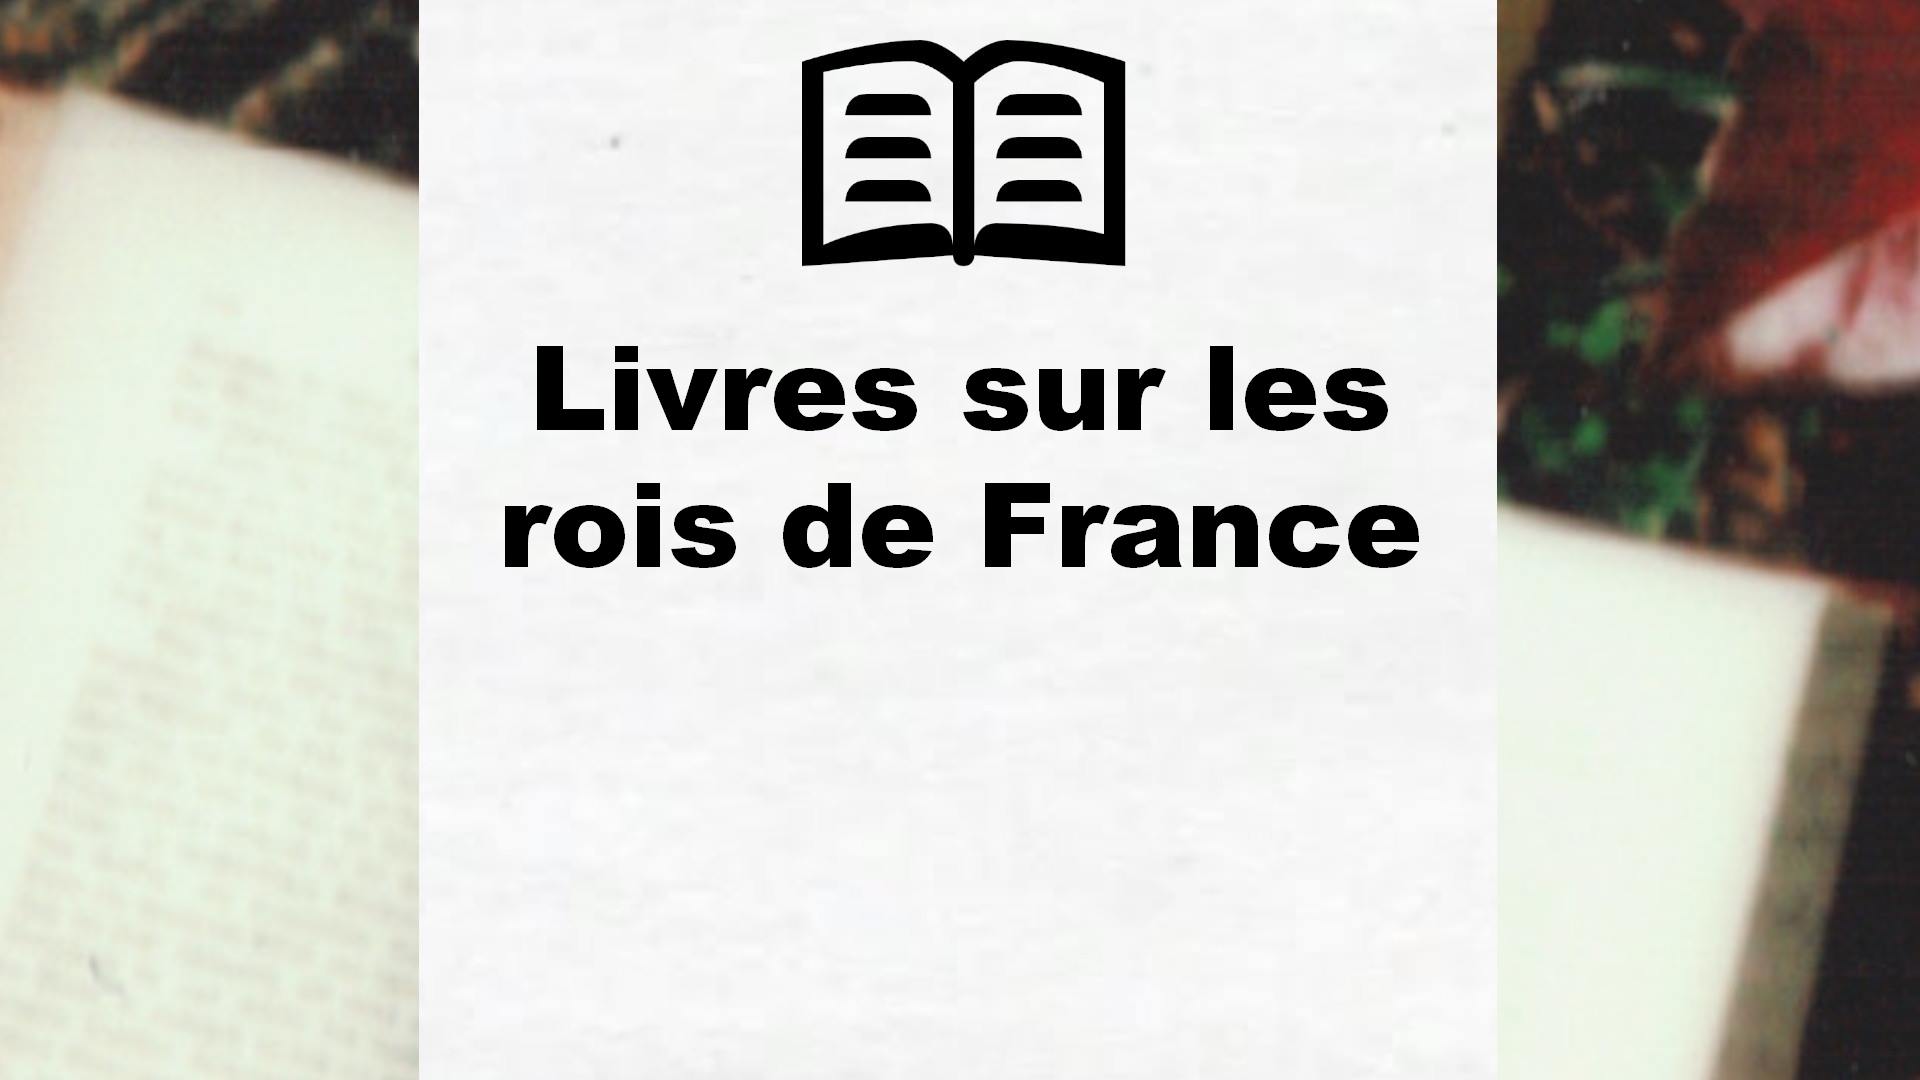 Livres sur les rois de France